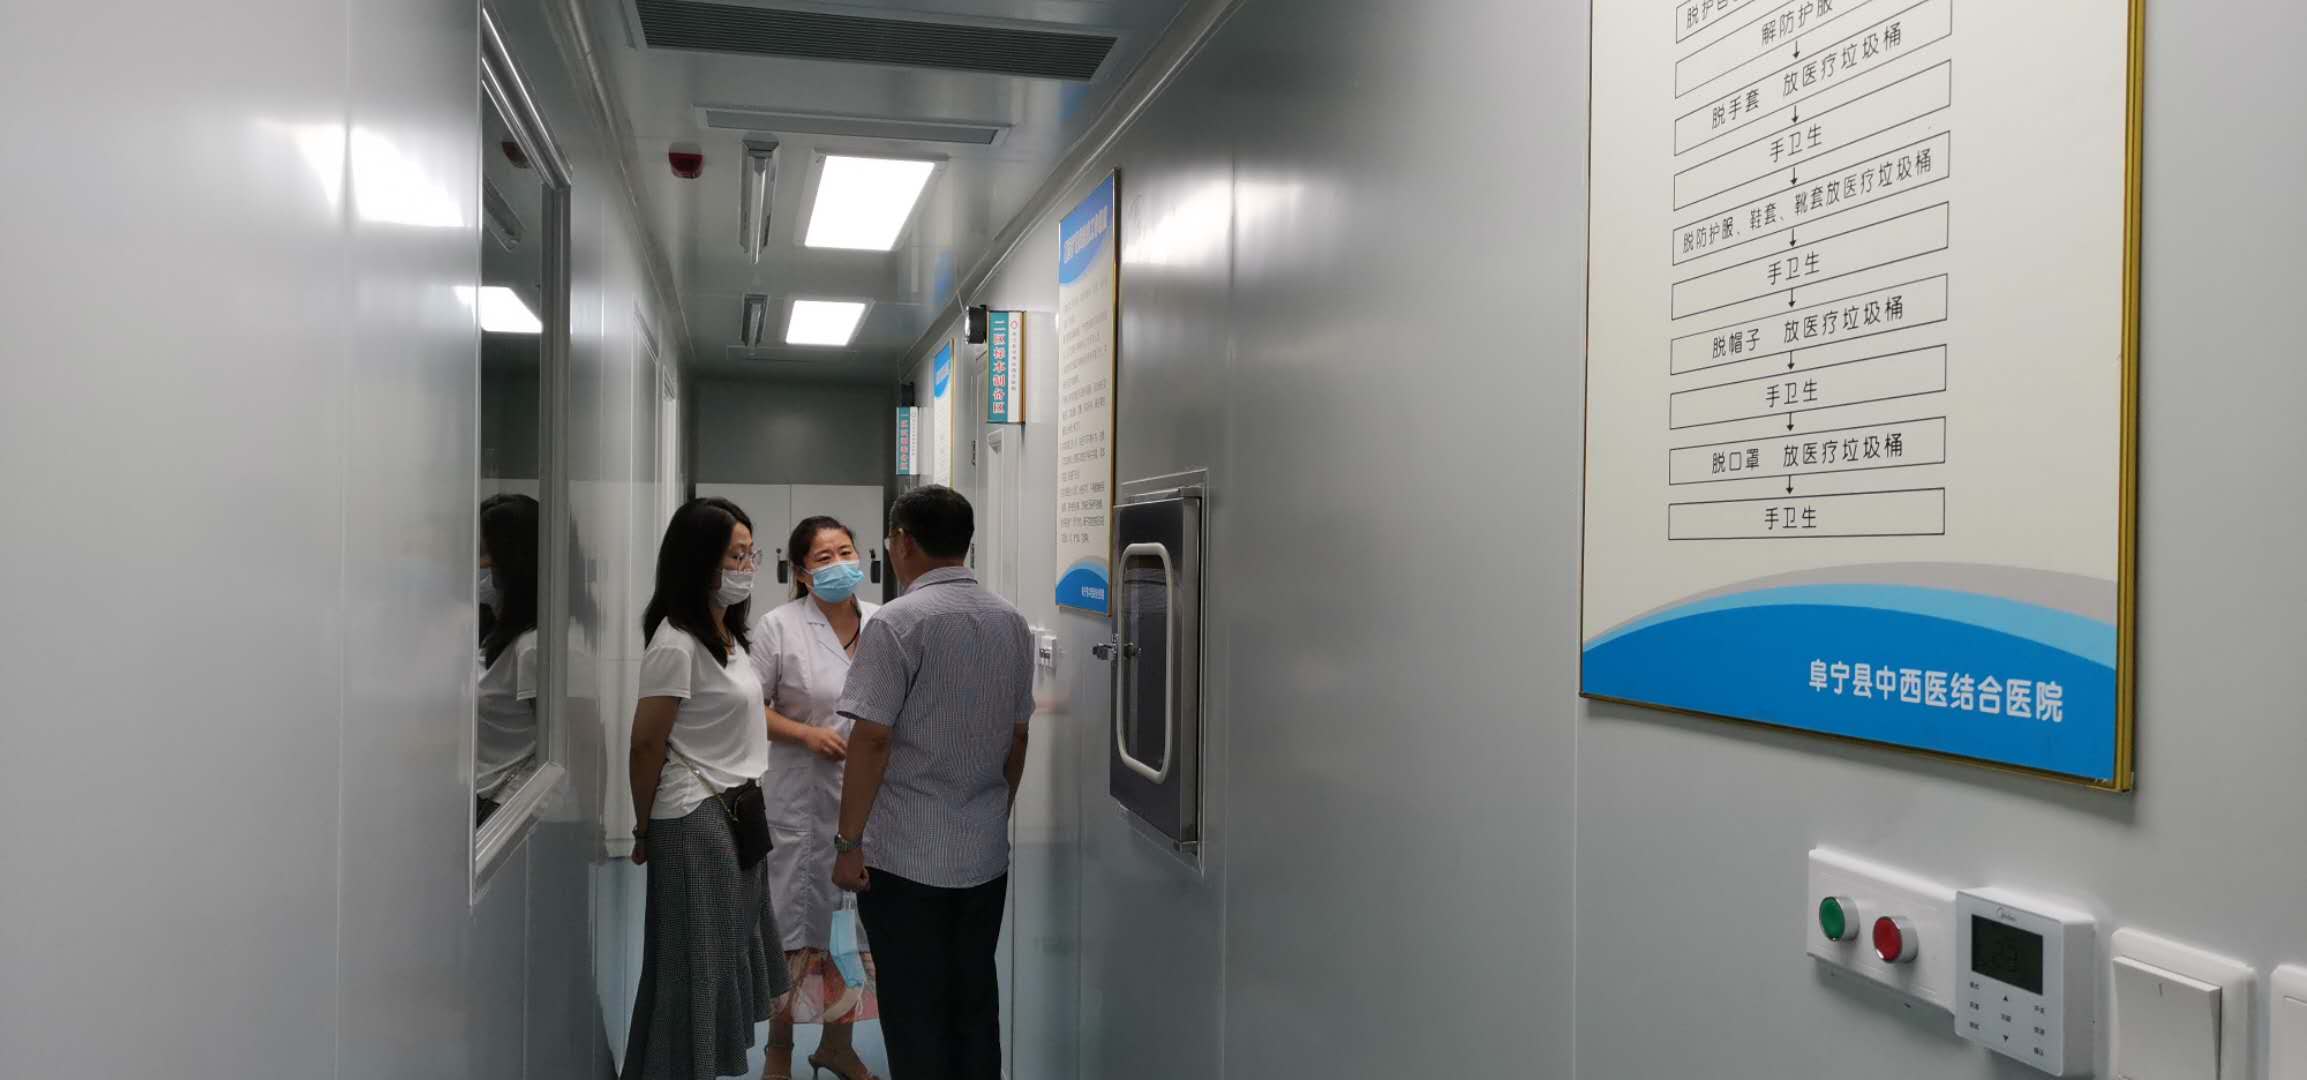 热烈祝贺我司顺利通过江苏省阜宁县中西医结合医院PCR实验室的竣工验收